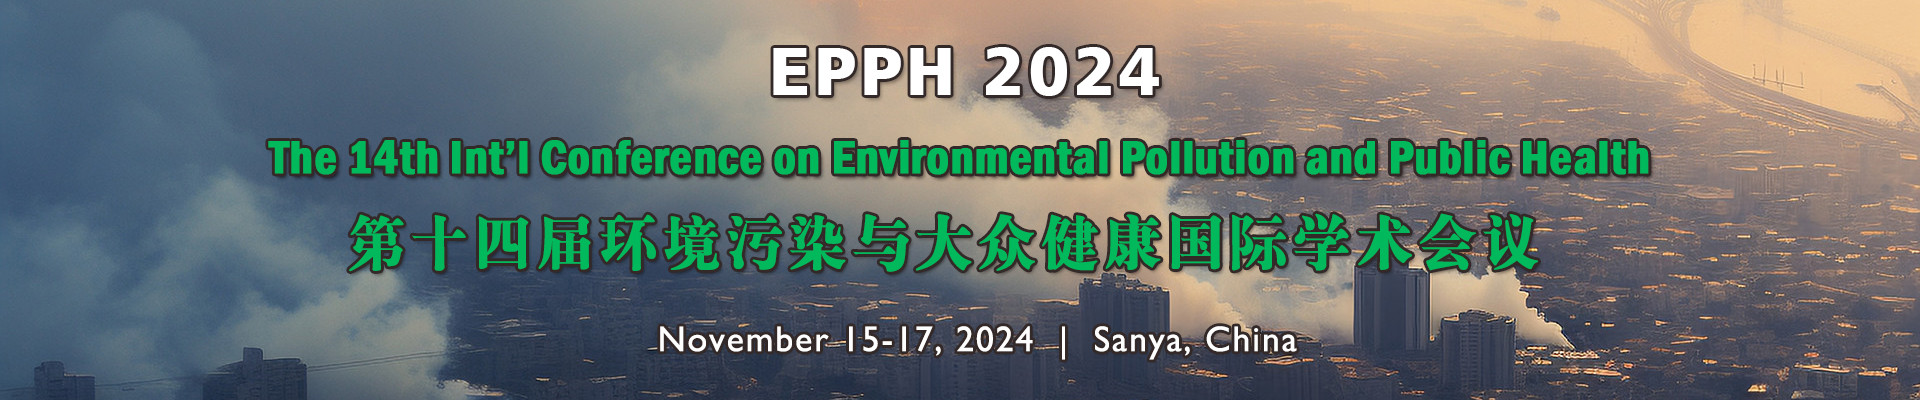 第十四届环境污染与大众健康国际学术会议（EPPH 2024)